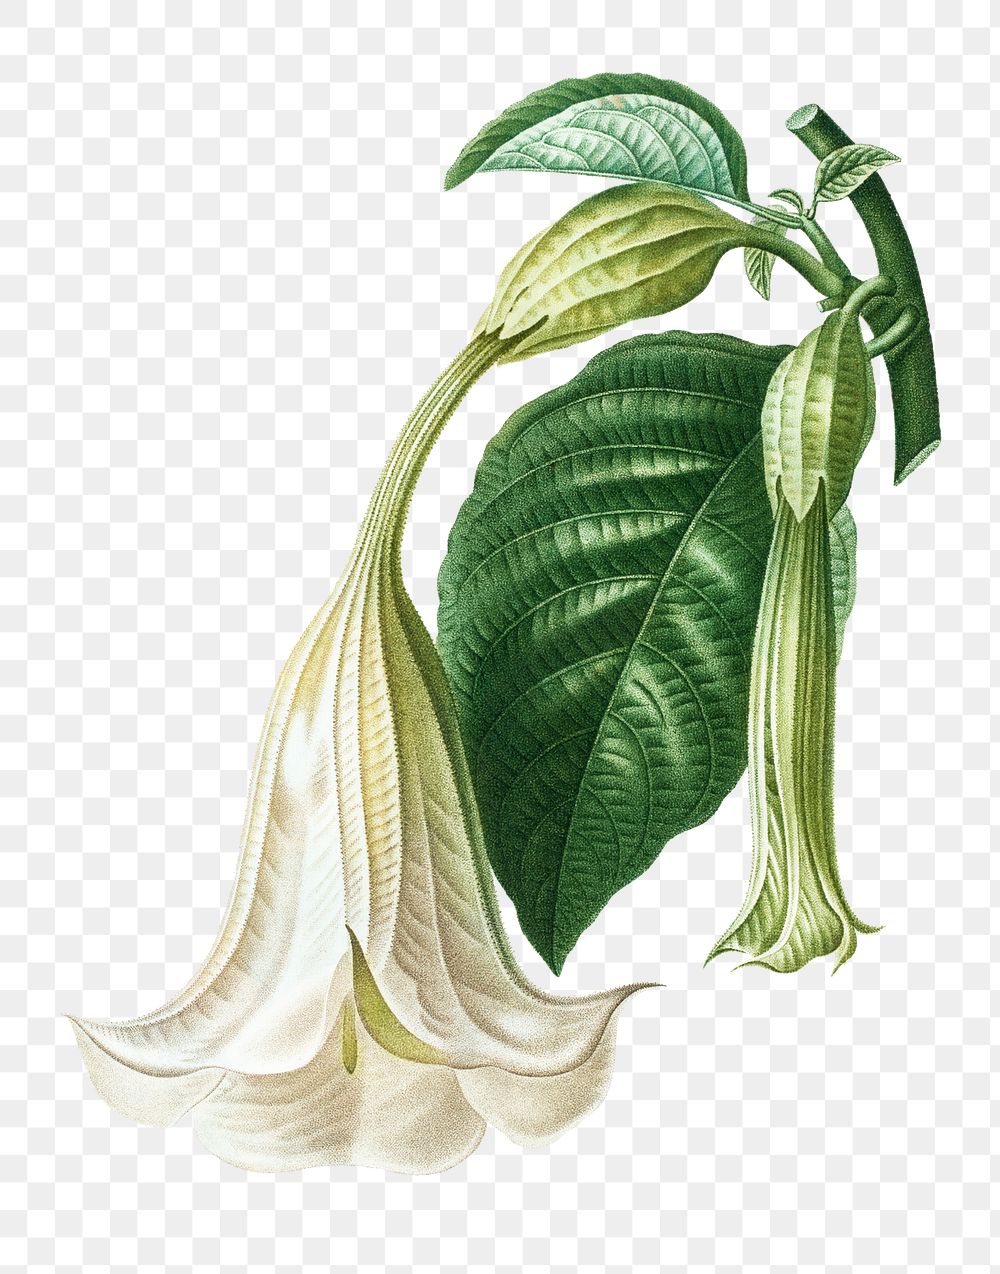 Angel's trumpet plant transparent png